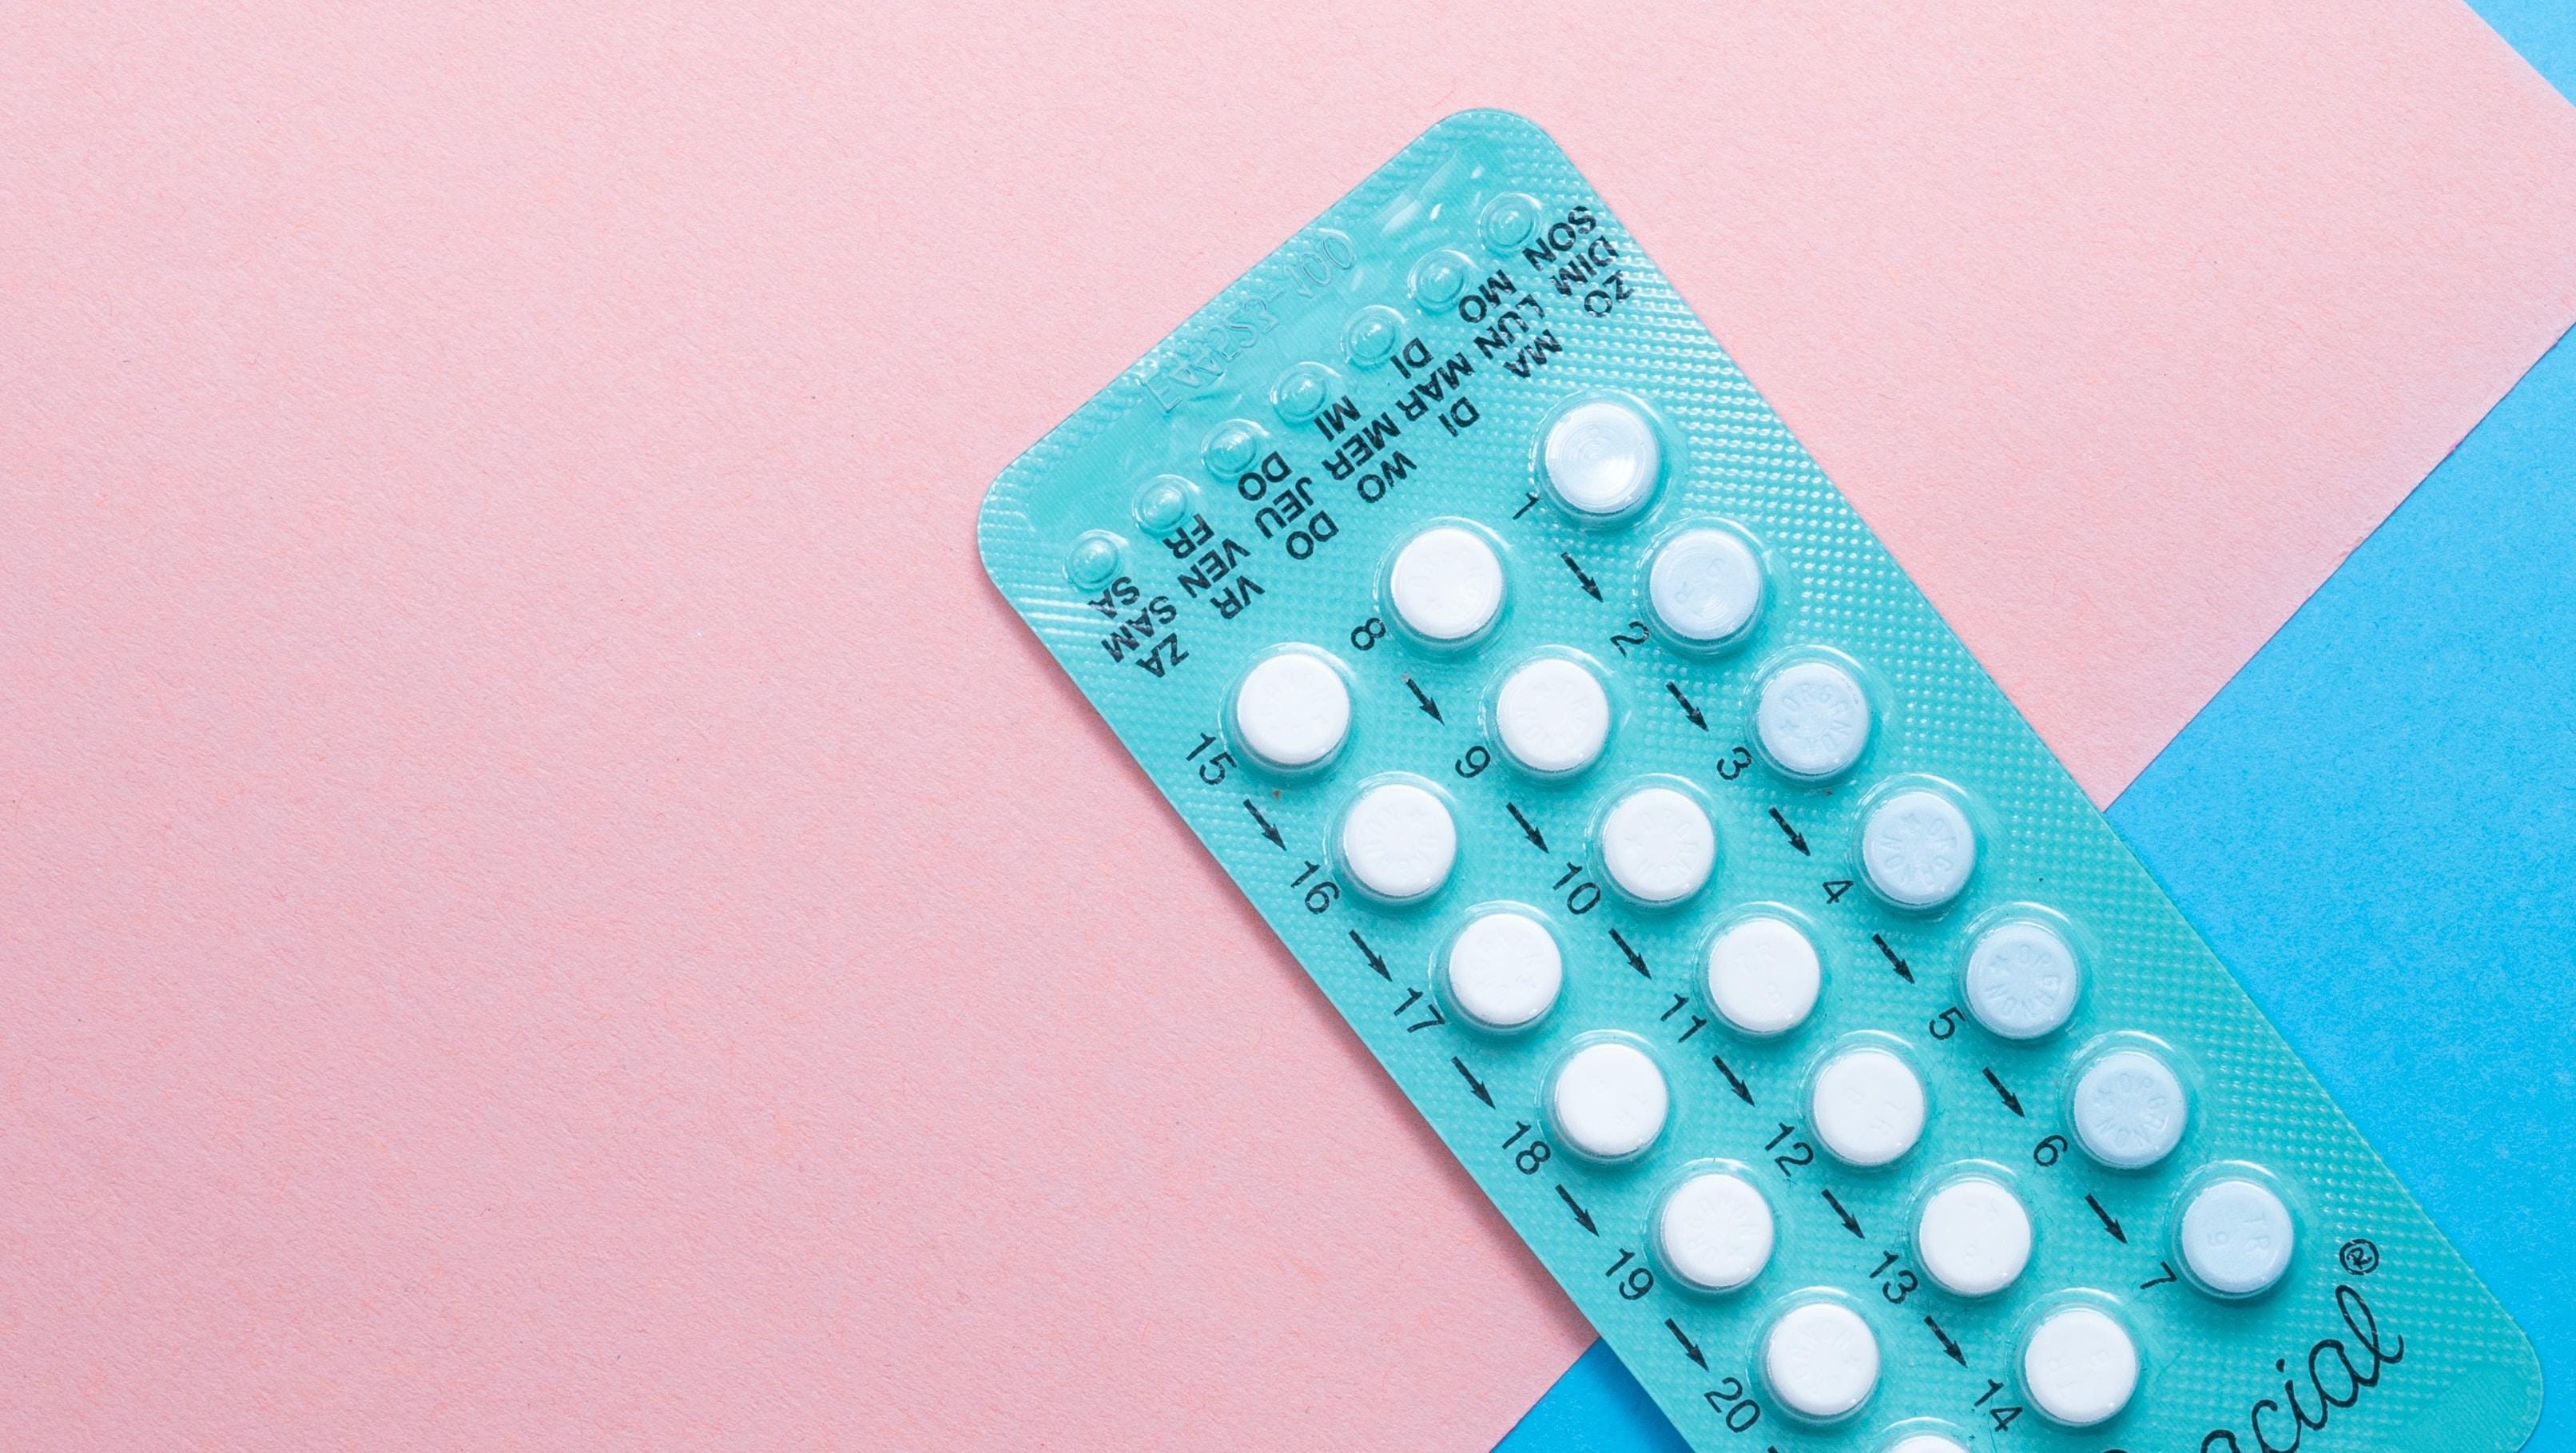 Pilule contraceptive et voyage: nos conseils pour garantir son ...